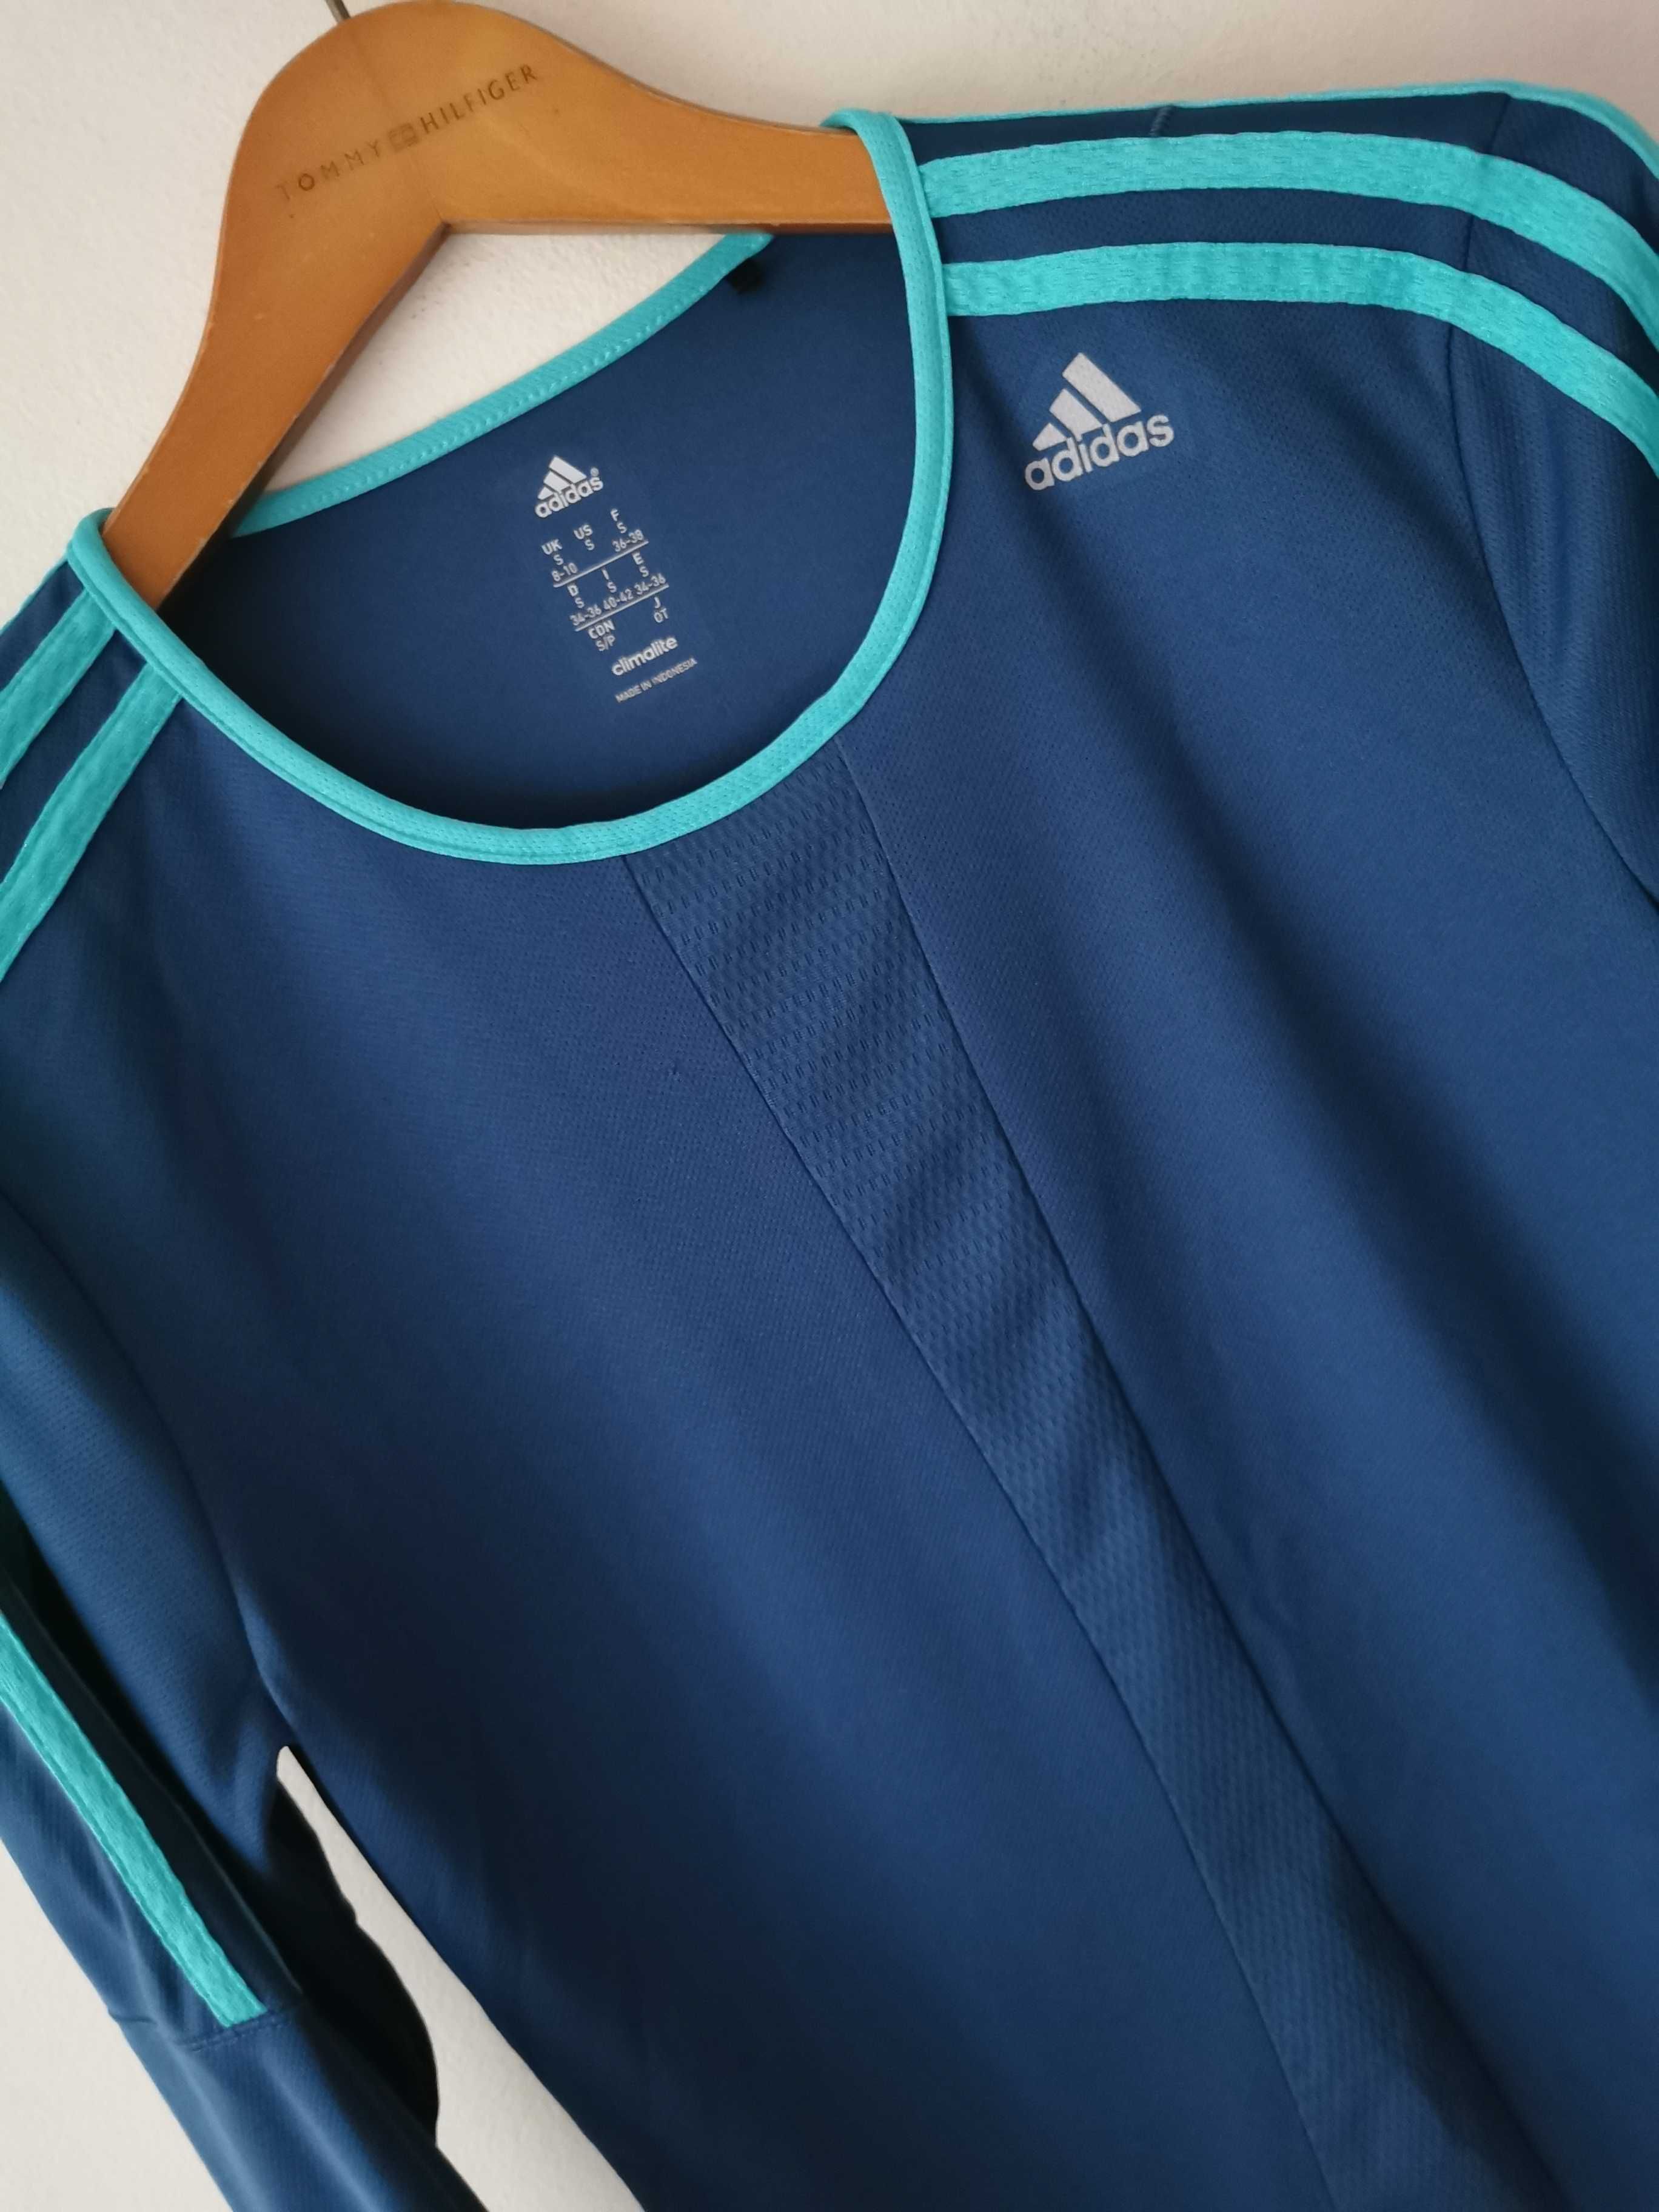 Adidas koszulka długi rękaw bluza sportowa damska IDEAŁ ORYGINAŁ S/M